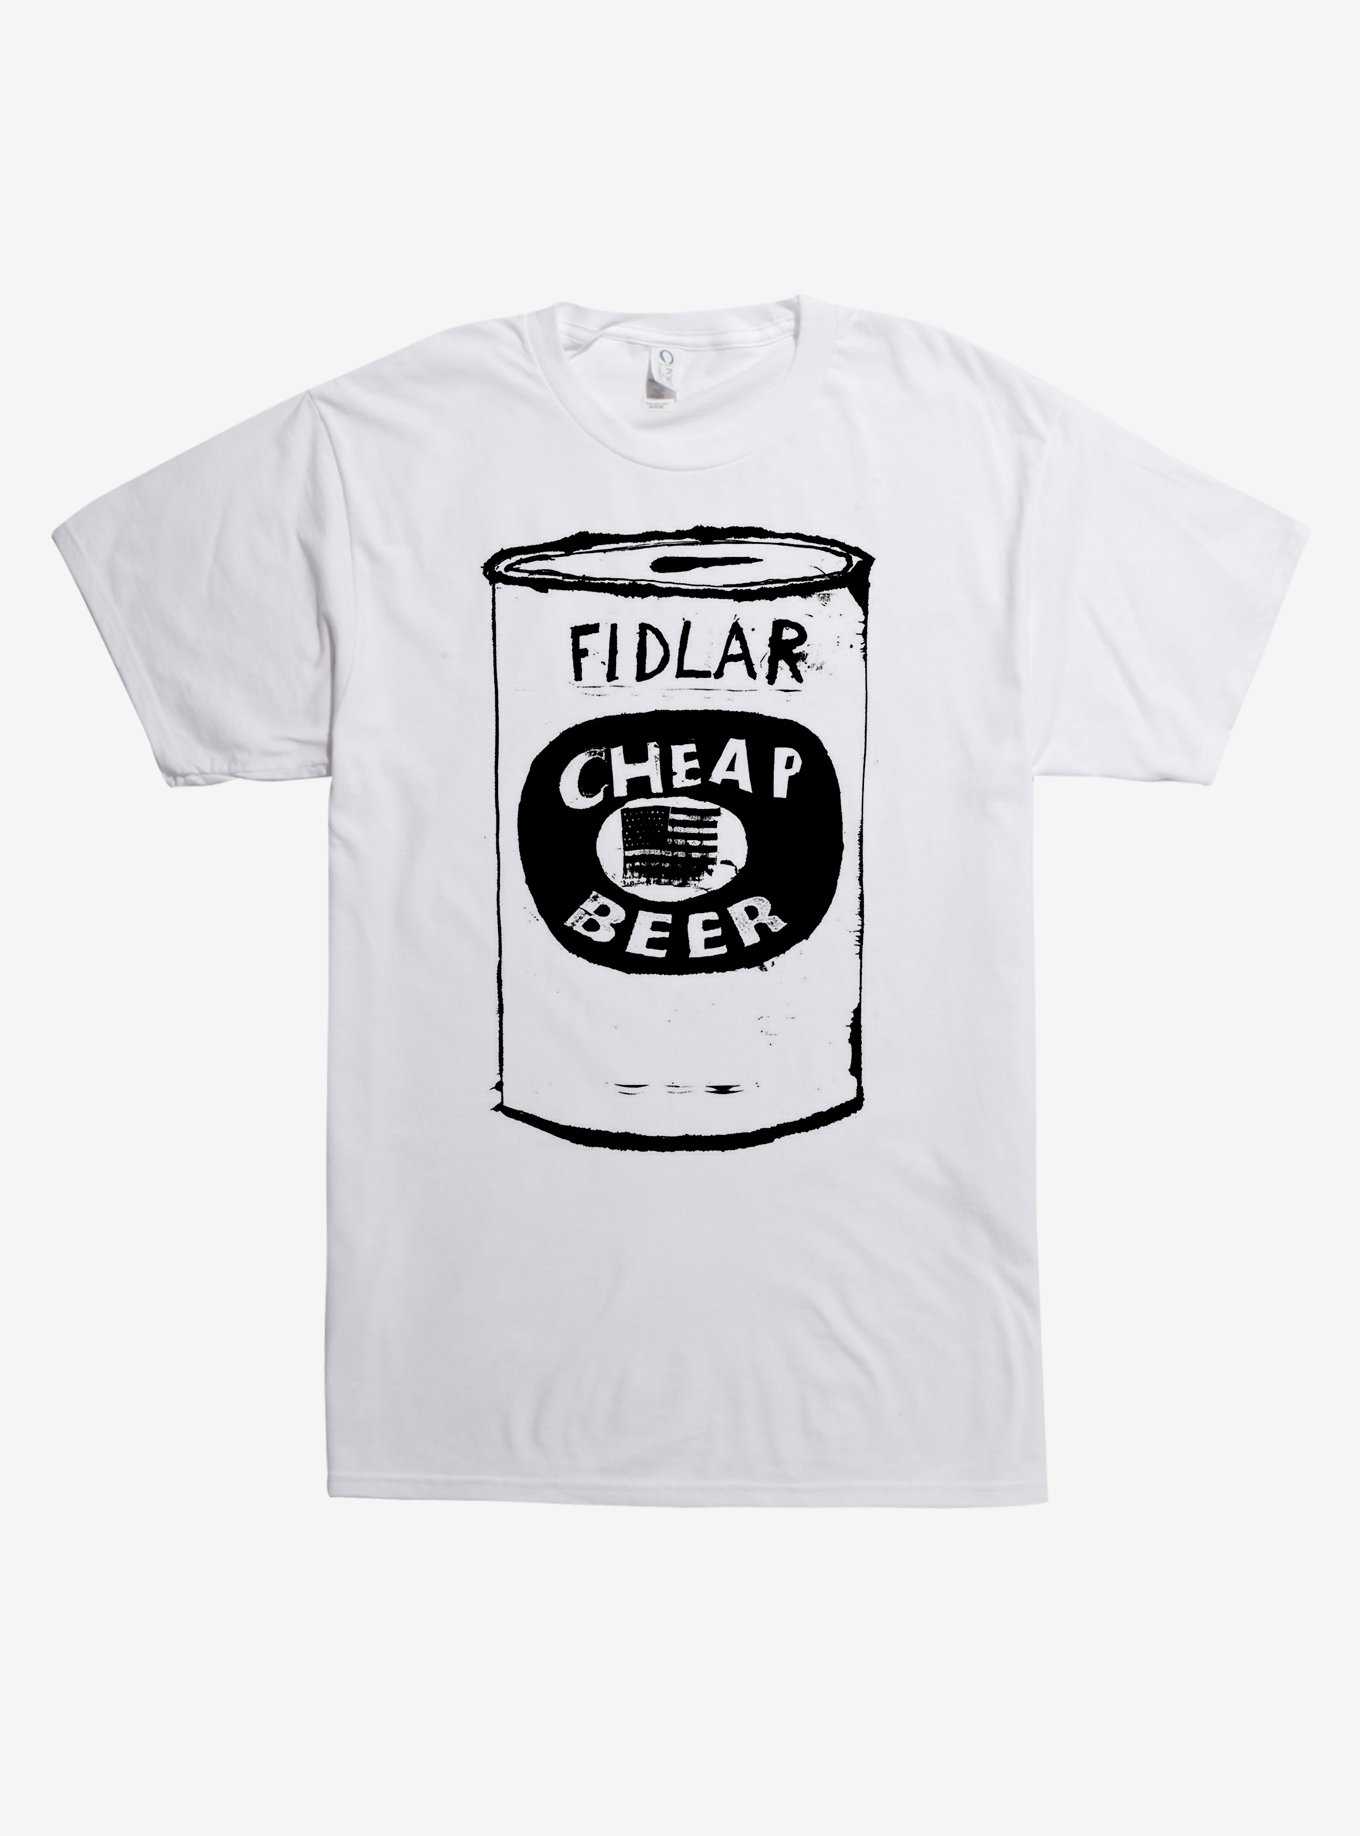 Fidlar Cheap Beer T-Shirt, , hi-res